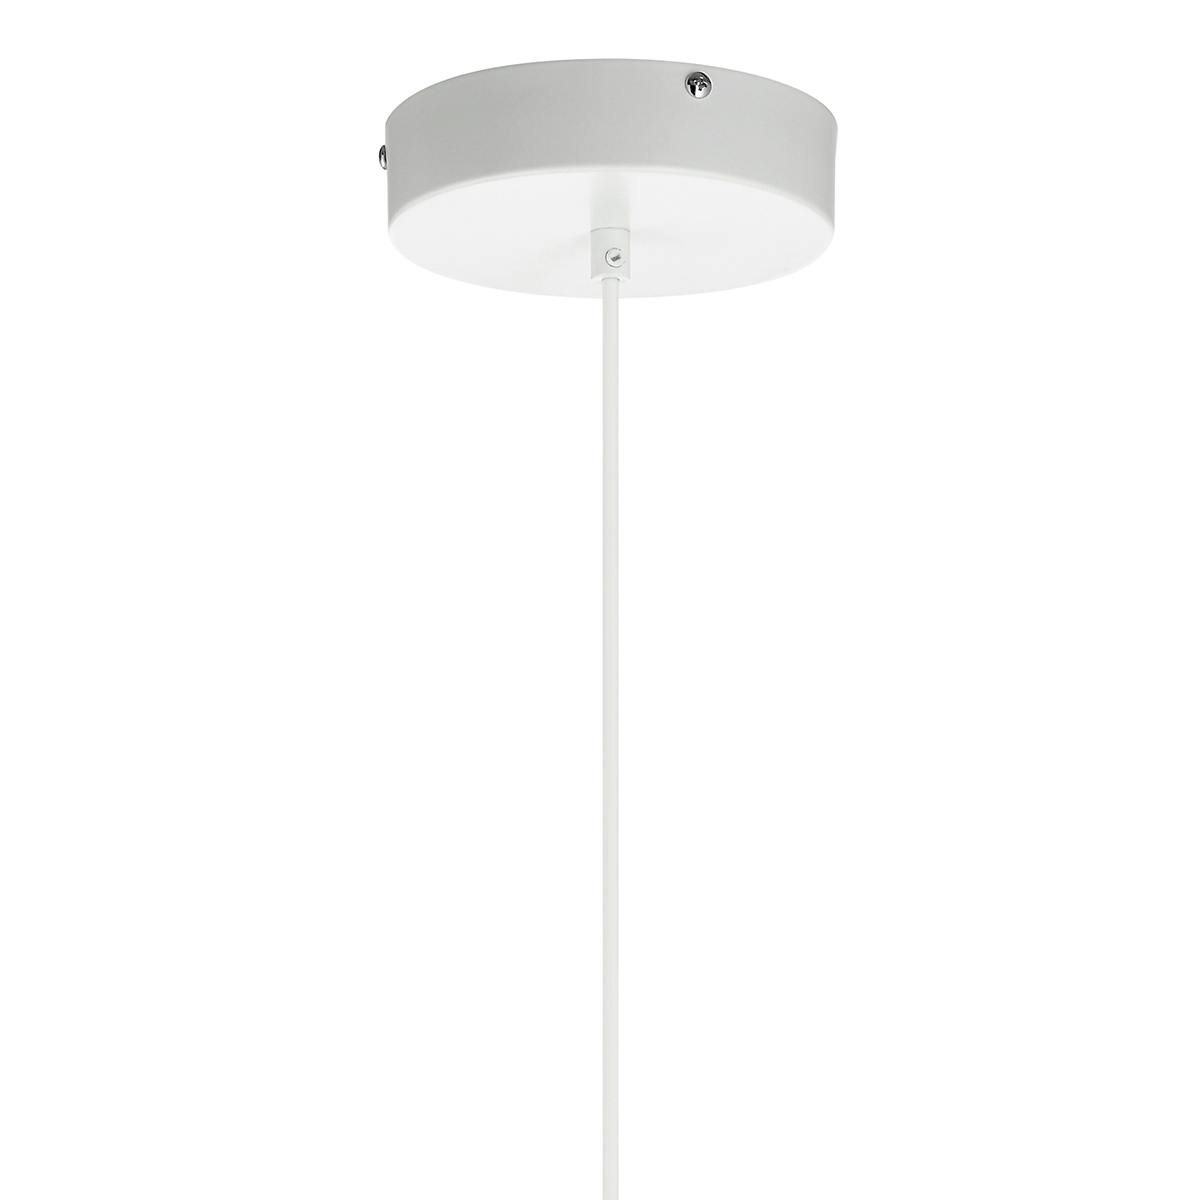 Canopy for the Kordan 3000K LED 1 Light Pendant White on a white background